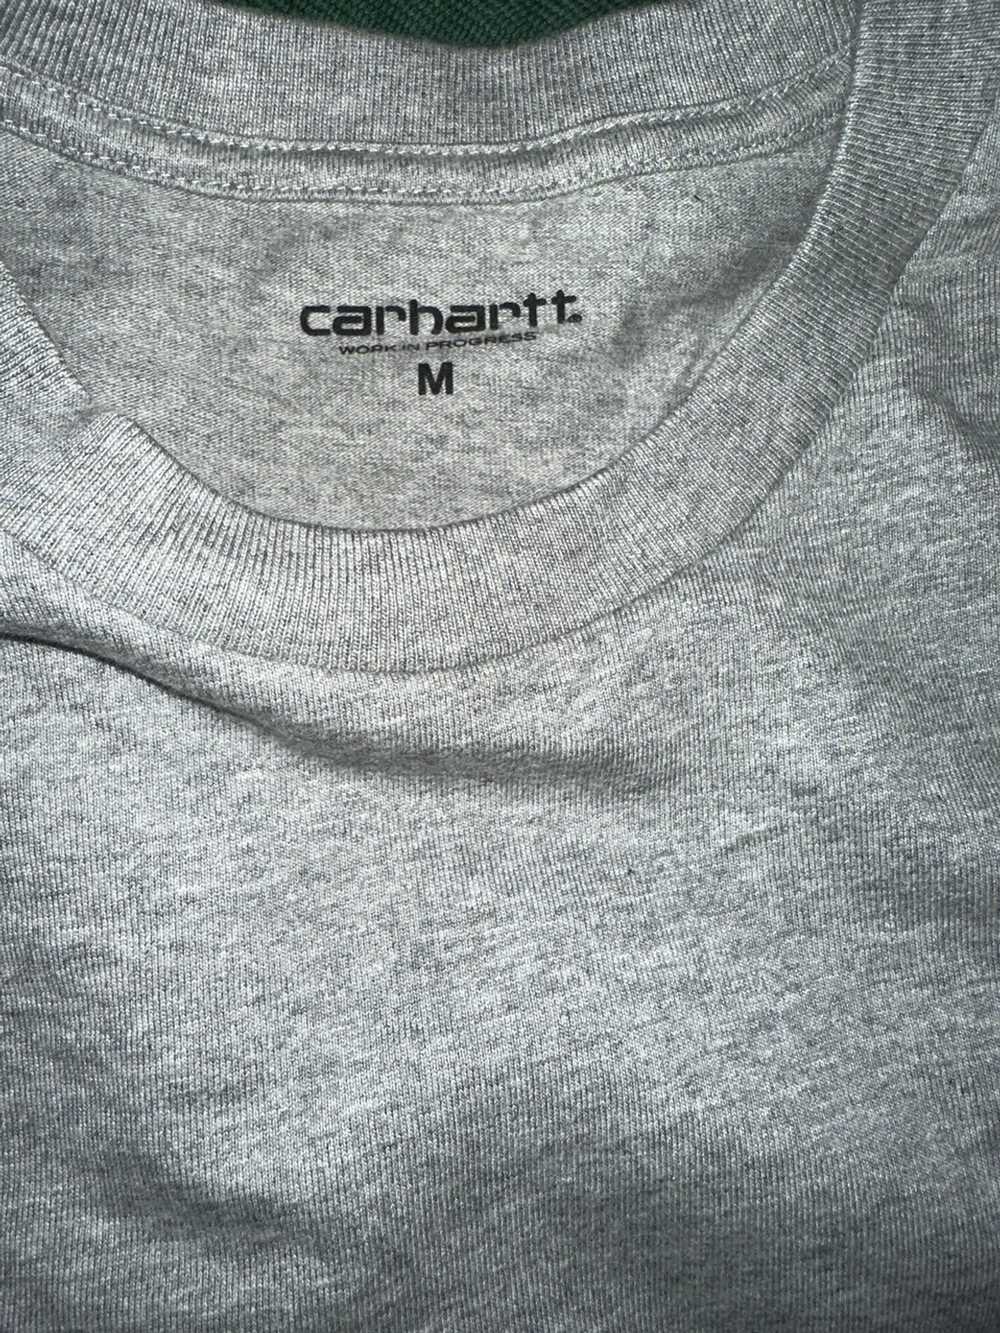 Carhartt × Streetwear × Vintage Carhartt short sl… - image 3